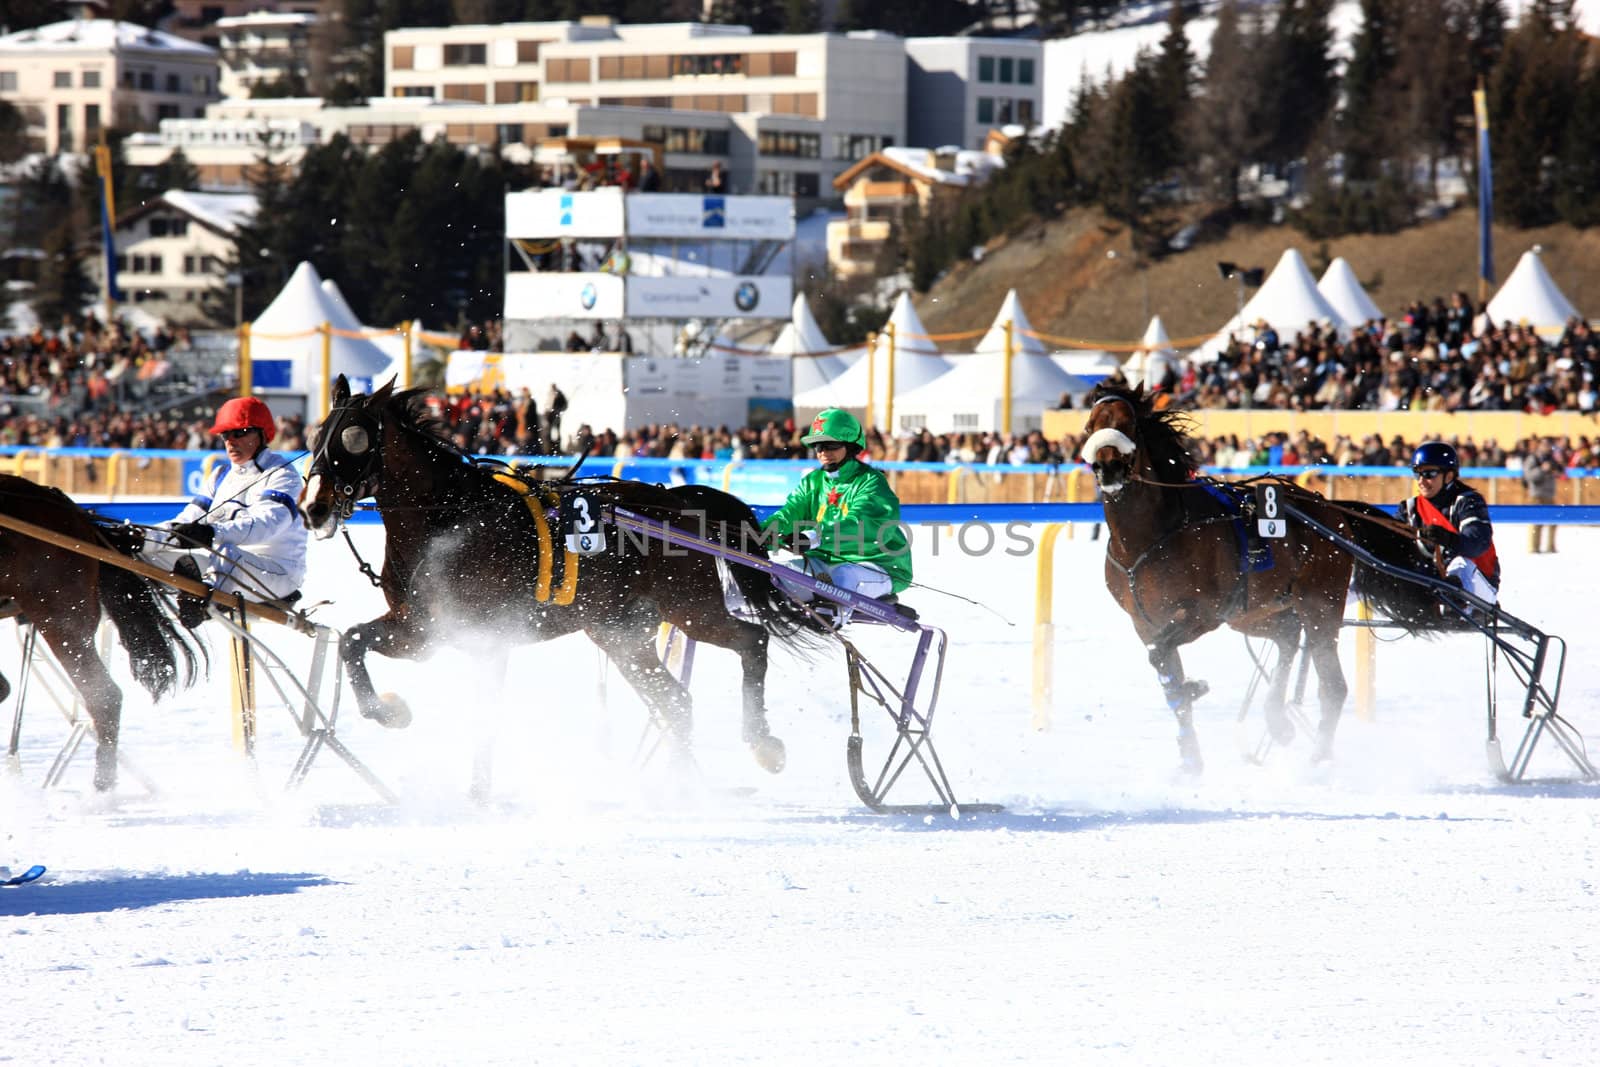 White Turf horse races in St. Moritz, 17. February 2008 